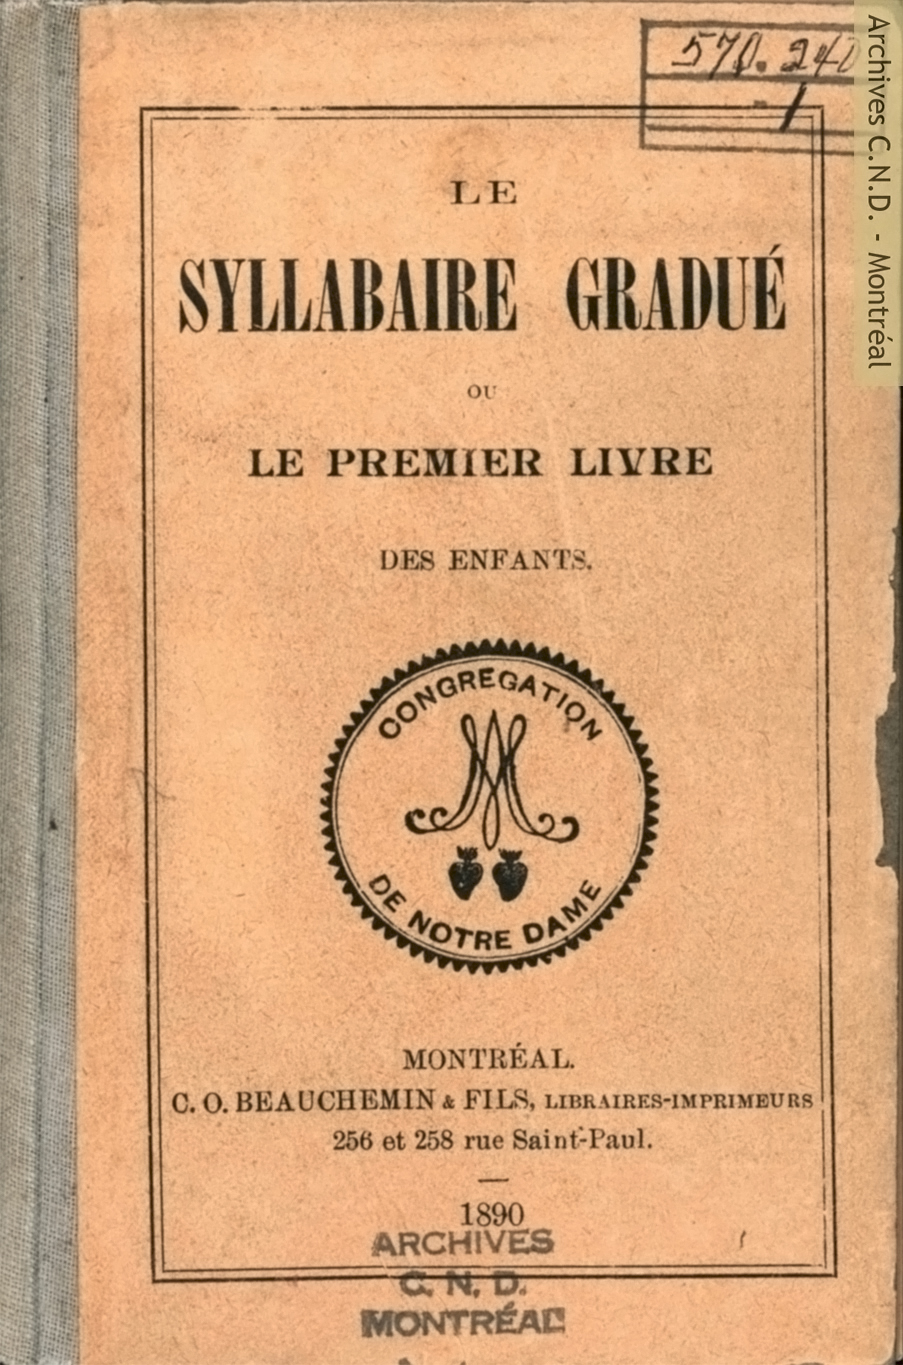 Cover page - Le syllabaire gradué ou le premier livre des enfants（発音練習帳）